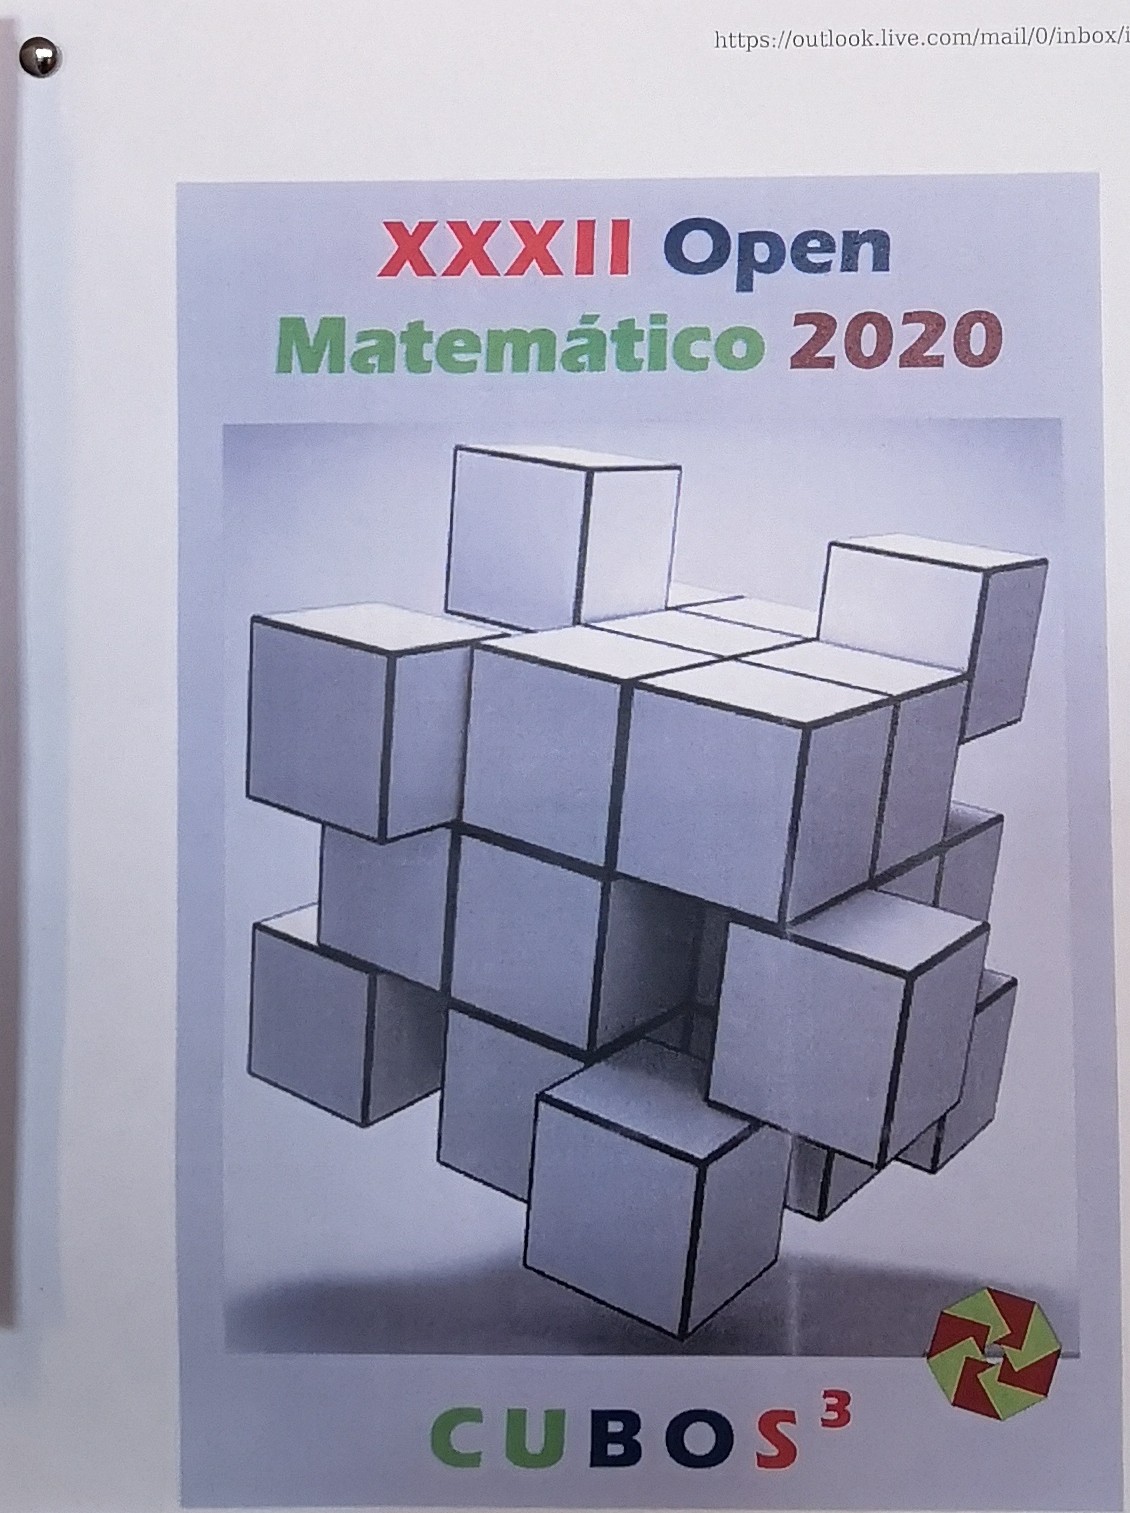 XXXII Open